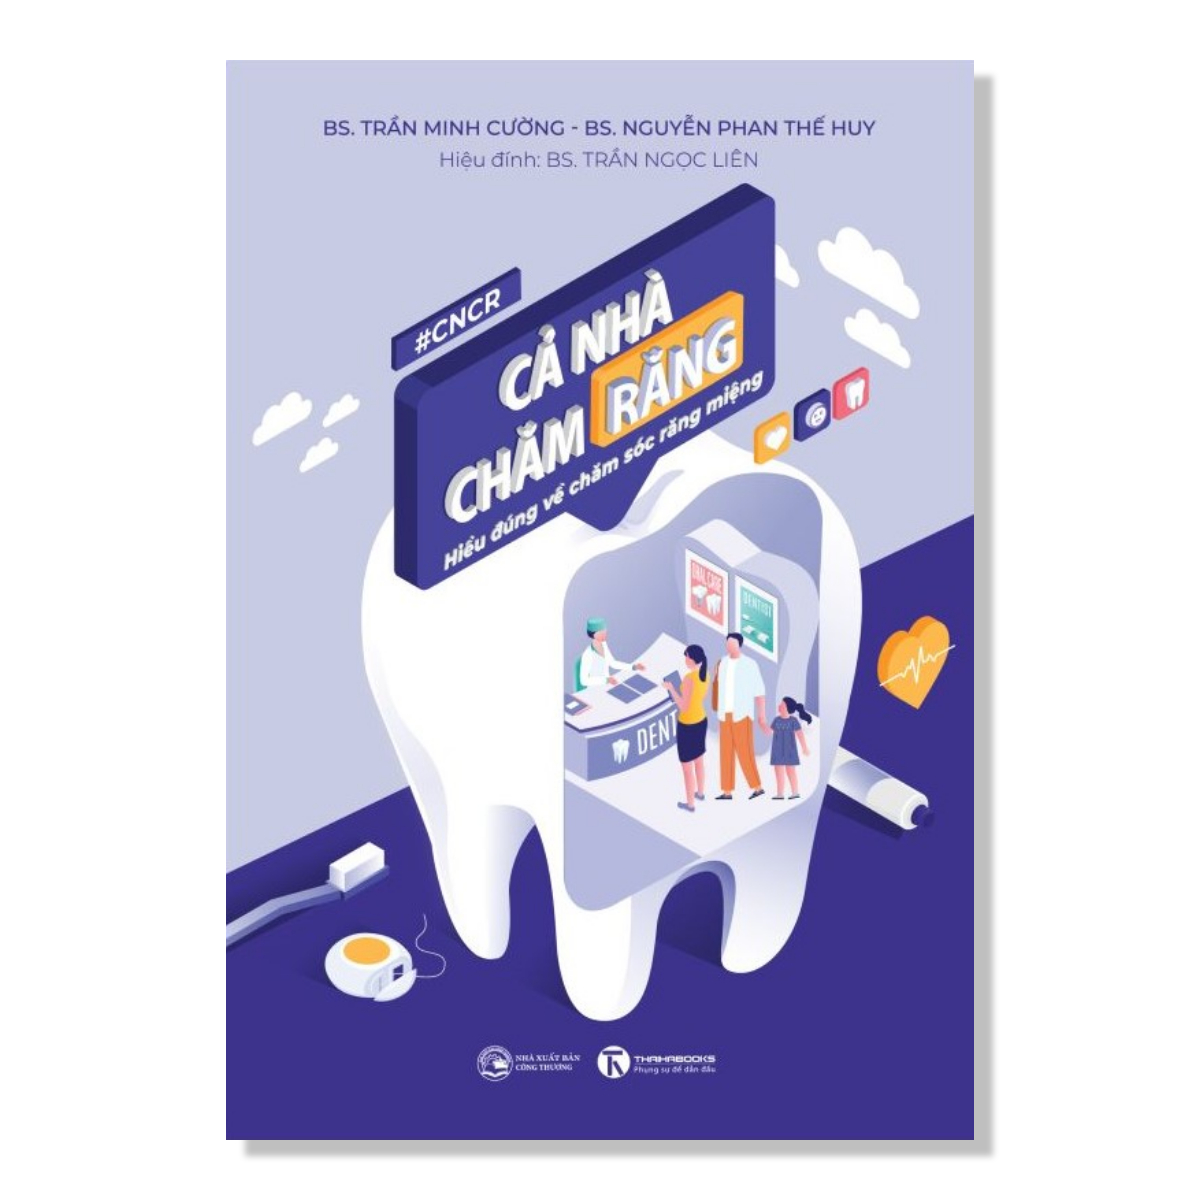 Sách - Cả nhà chăm răng: Hiểu đúng về chăm sóc răng miệng - Thái Hà Books